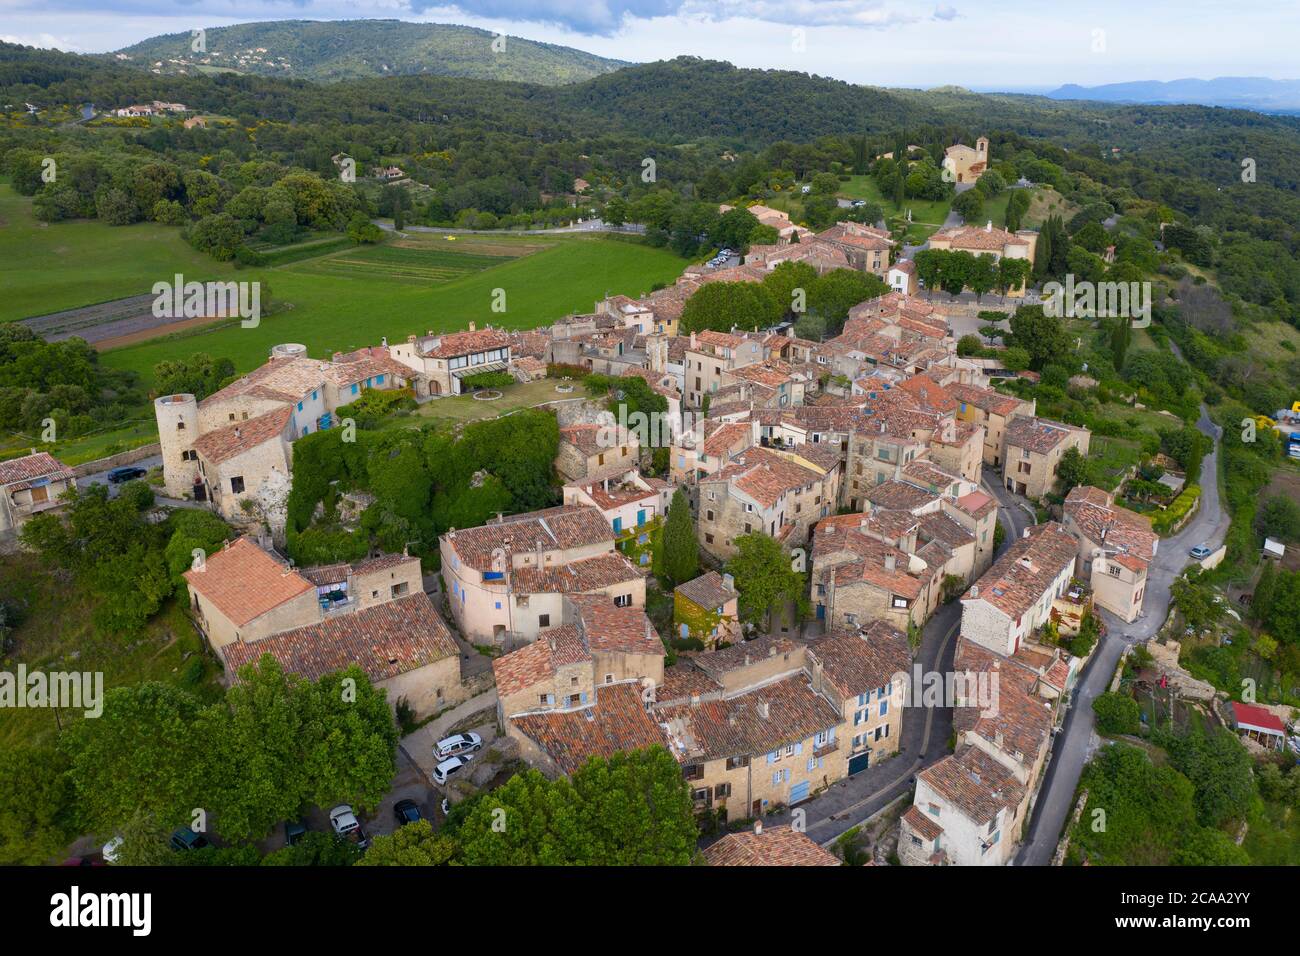 Frankreich, Var, Luftaufnahme von Tourtour, Dorf am Himmel, beschriftet Les Plus Beaux Villages de France (die schönsten Dörfer Frankreichs) Stockfoto